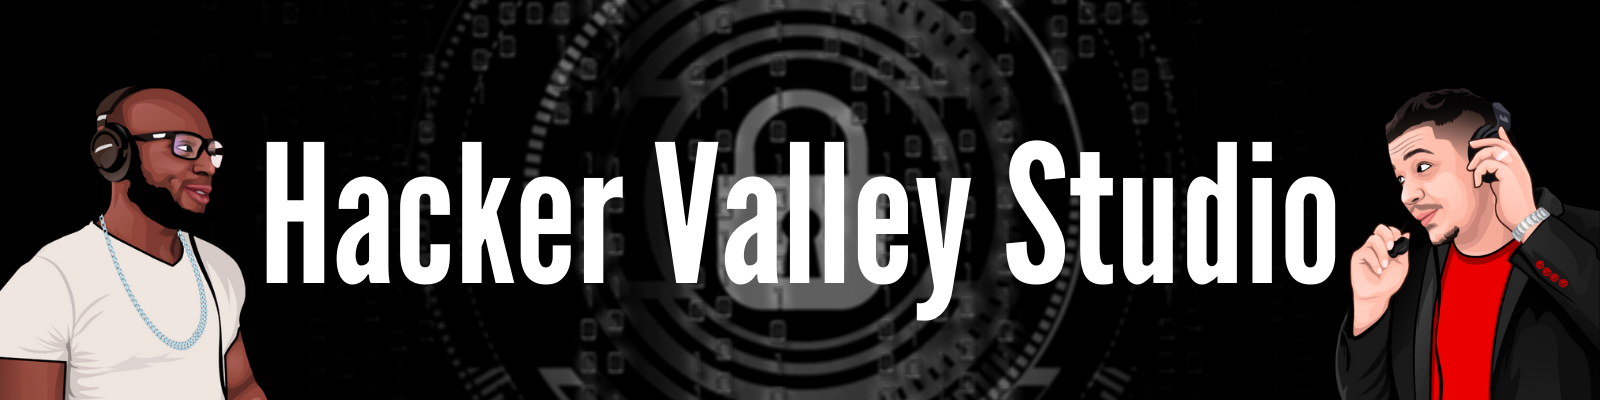 Hacker Valley Studio